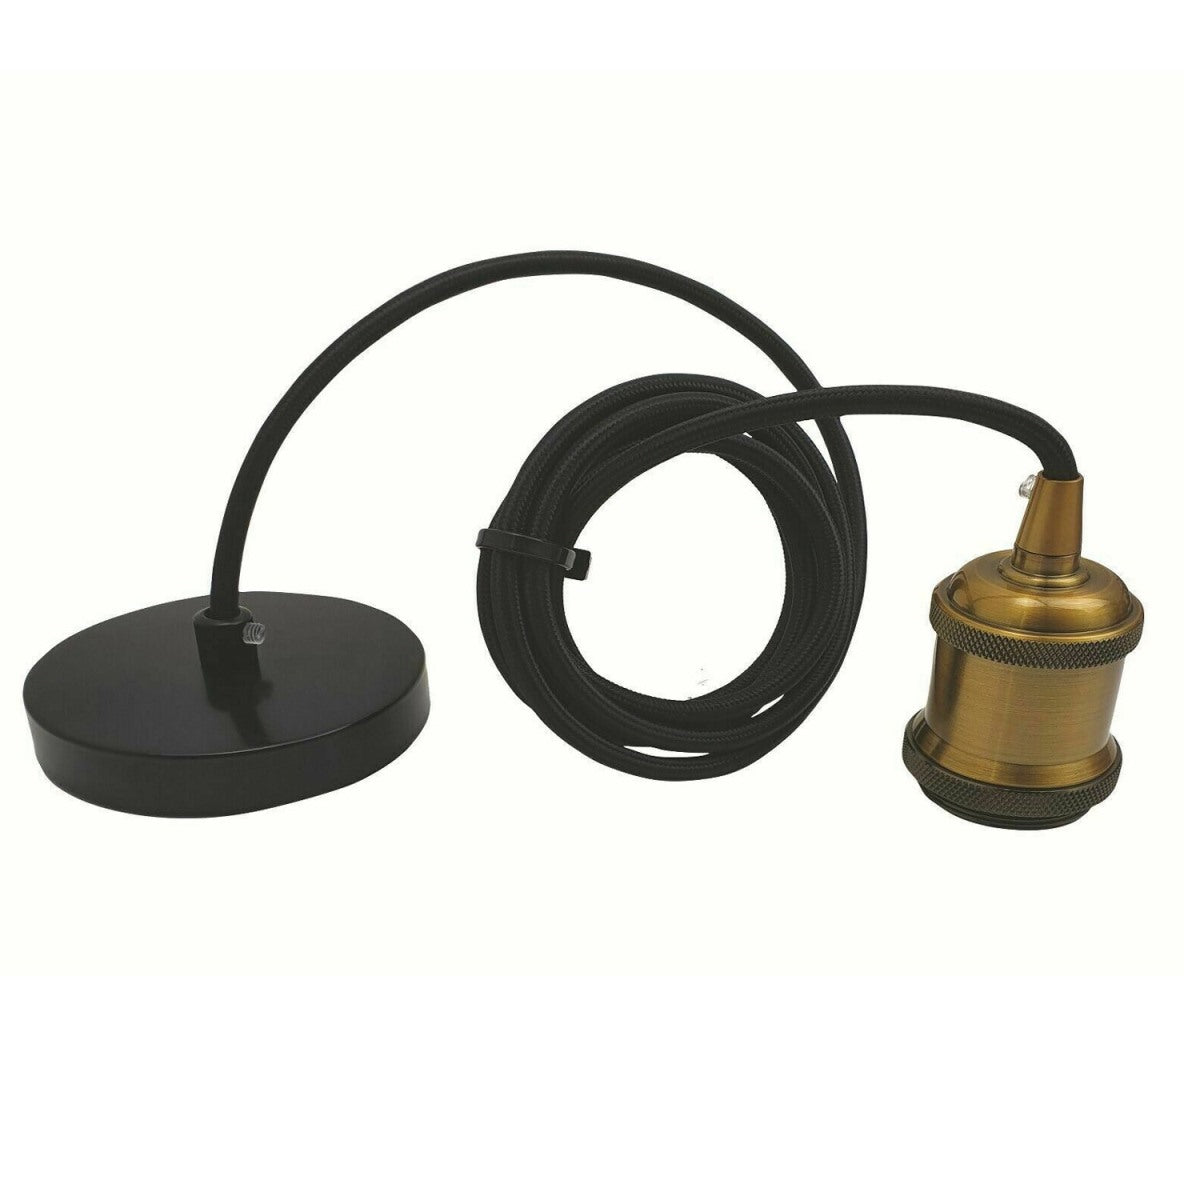 2m Black Round Cable E27 Base Yellow Brass Holder~1717 - LEDSone UK Ltd